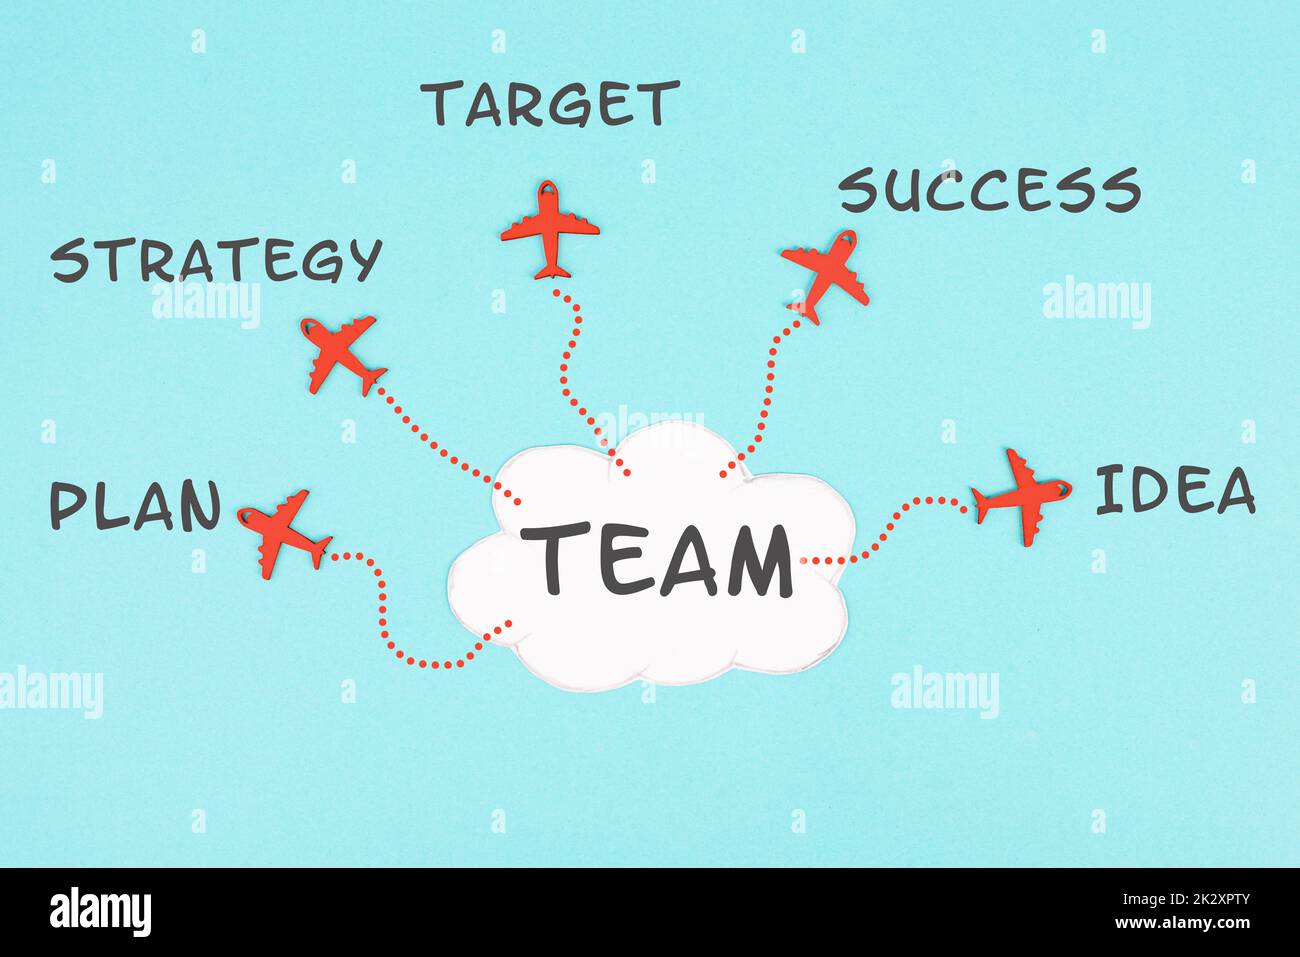 Wolke mit dem Wort Team, rote Flugzeuge, die in verschiedene Richtungen fliegen, Wörter wie Plan, Ziel, Idee, Strategie und Erfolg stehen am Himmel, Teamwork in der Wirtschaft Stockfoto